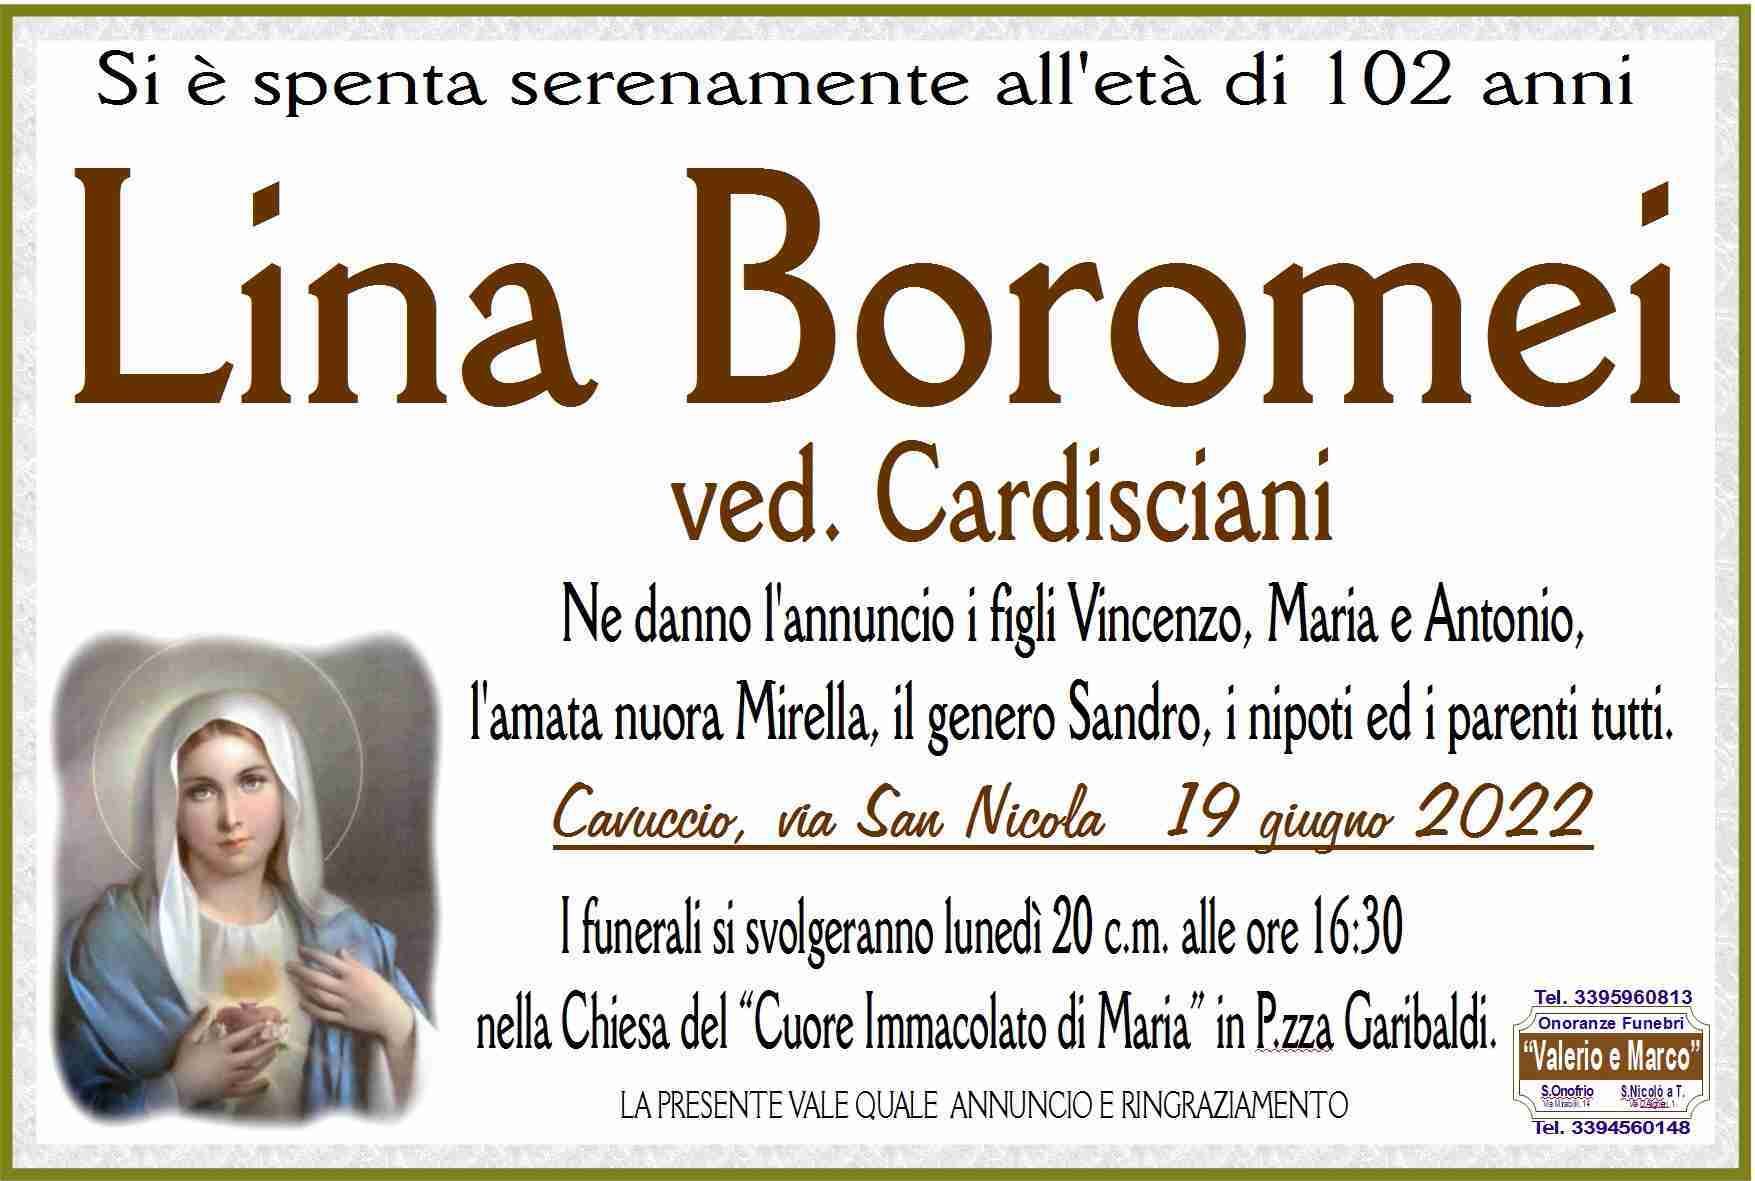 Lina Boromei